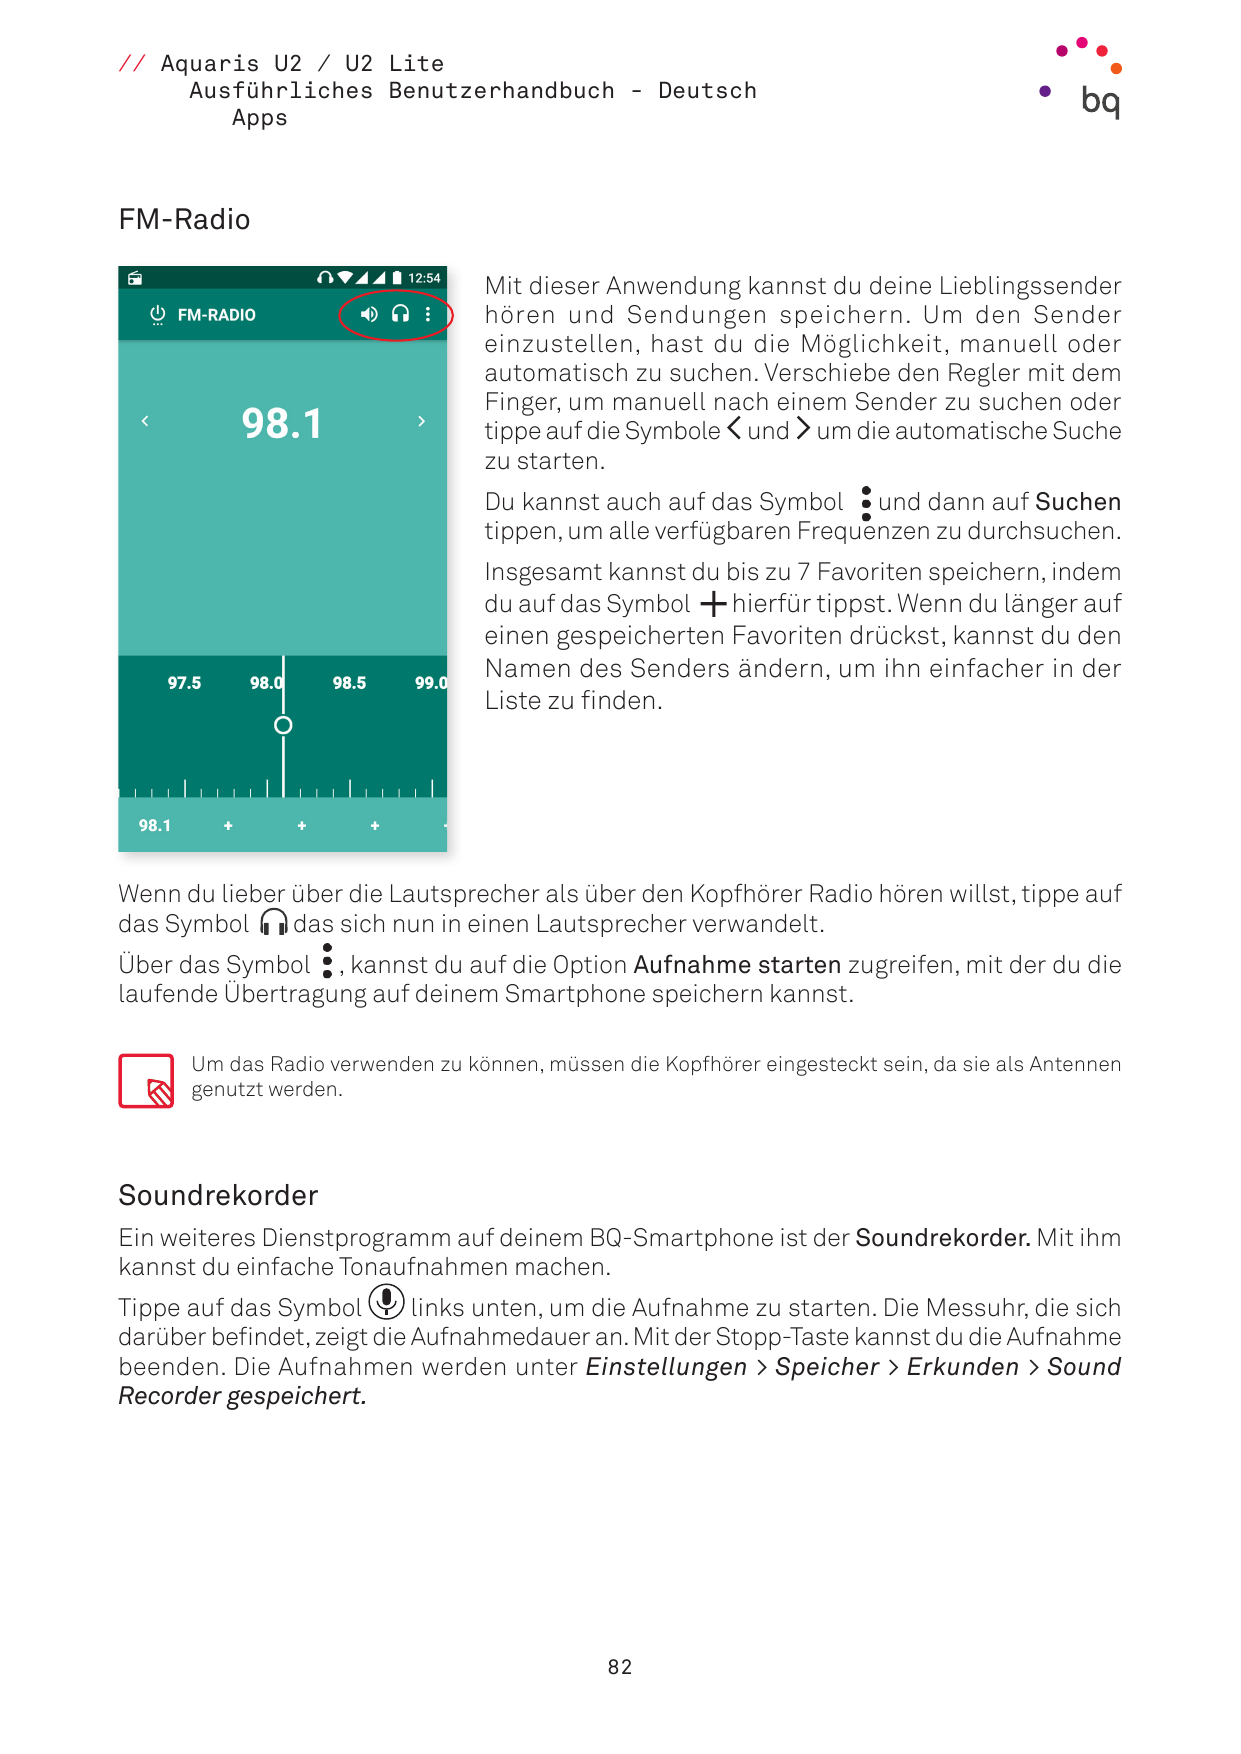 // Aquaris U2 / U2 LiteAusführliches Benutzerhandbuch - DeutschAppsFM-RadioMit dieser Anwendung kannst du deine Lieblingssenderh